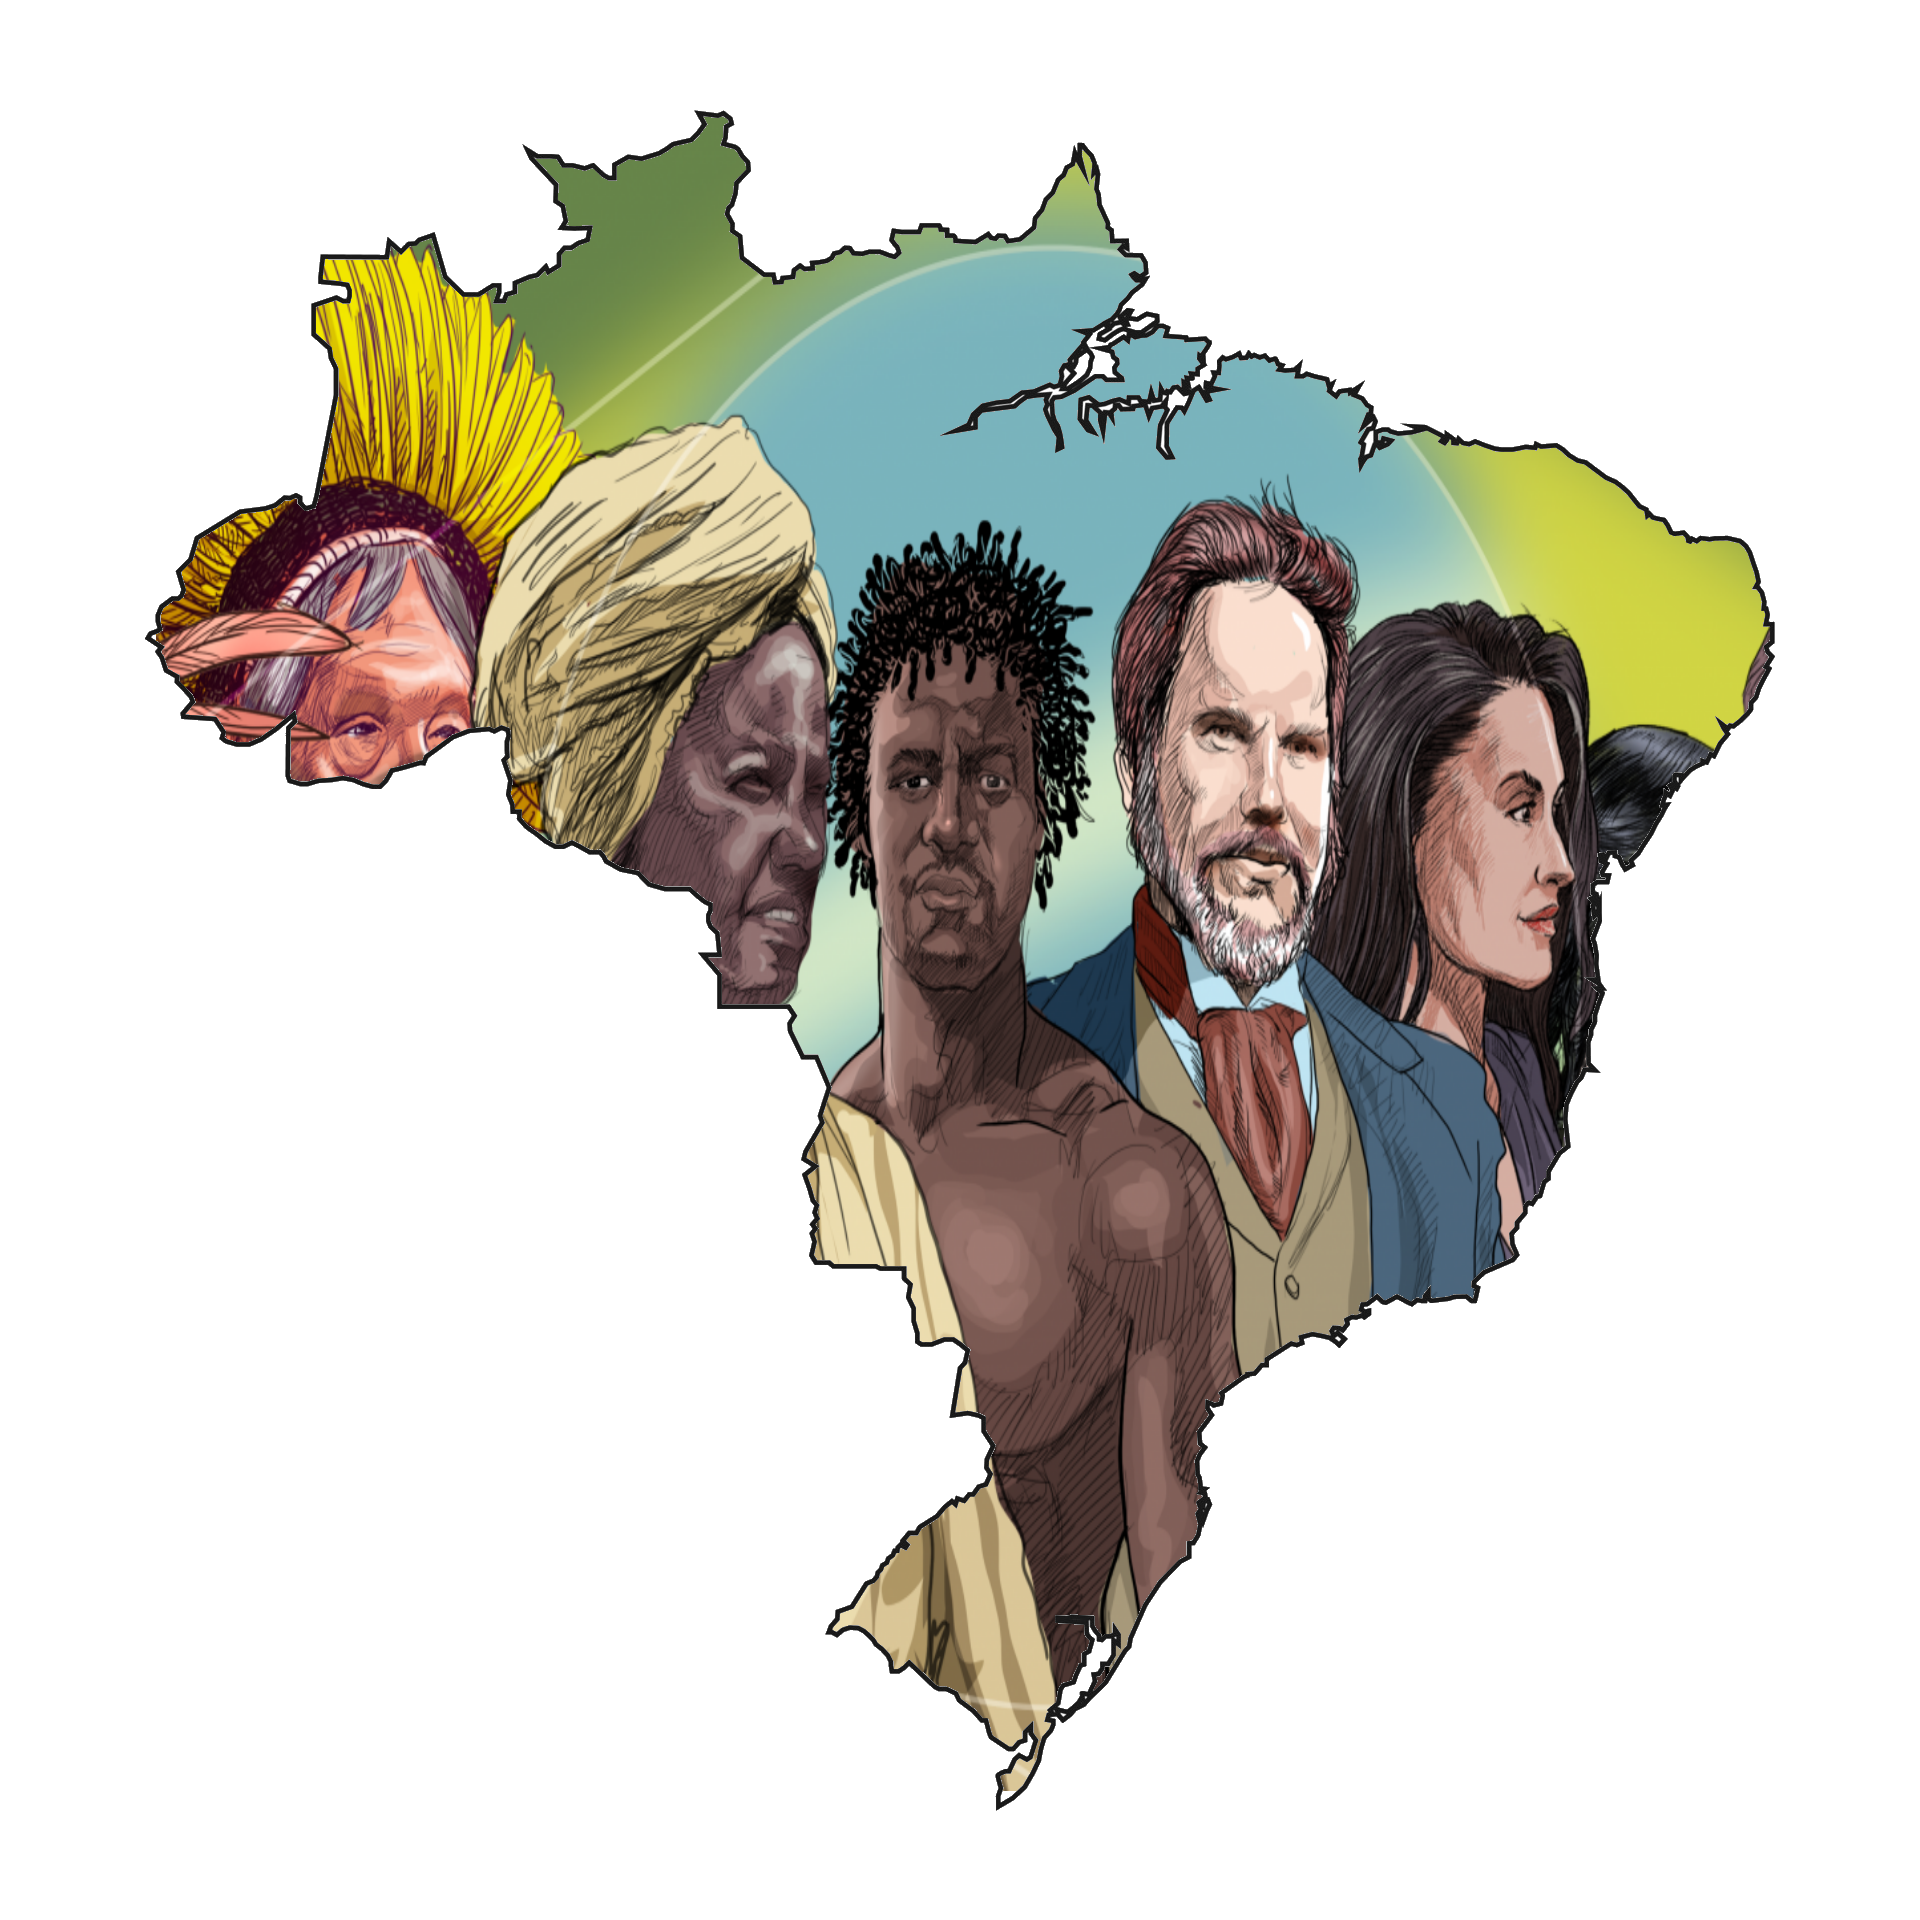 Os Maiores Grupos de Imigrantes no Brasil